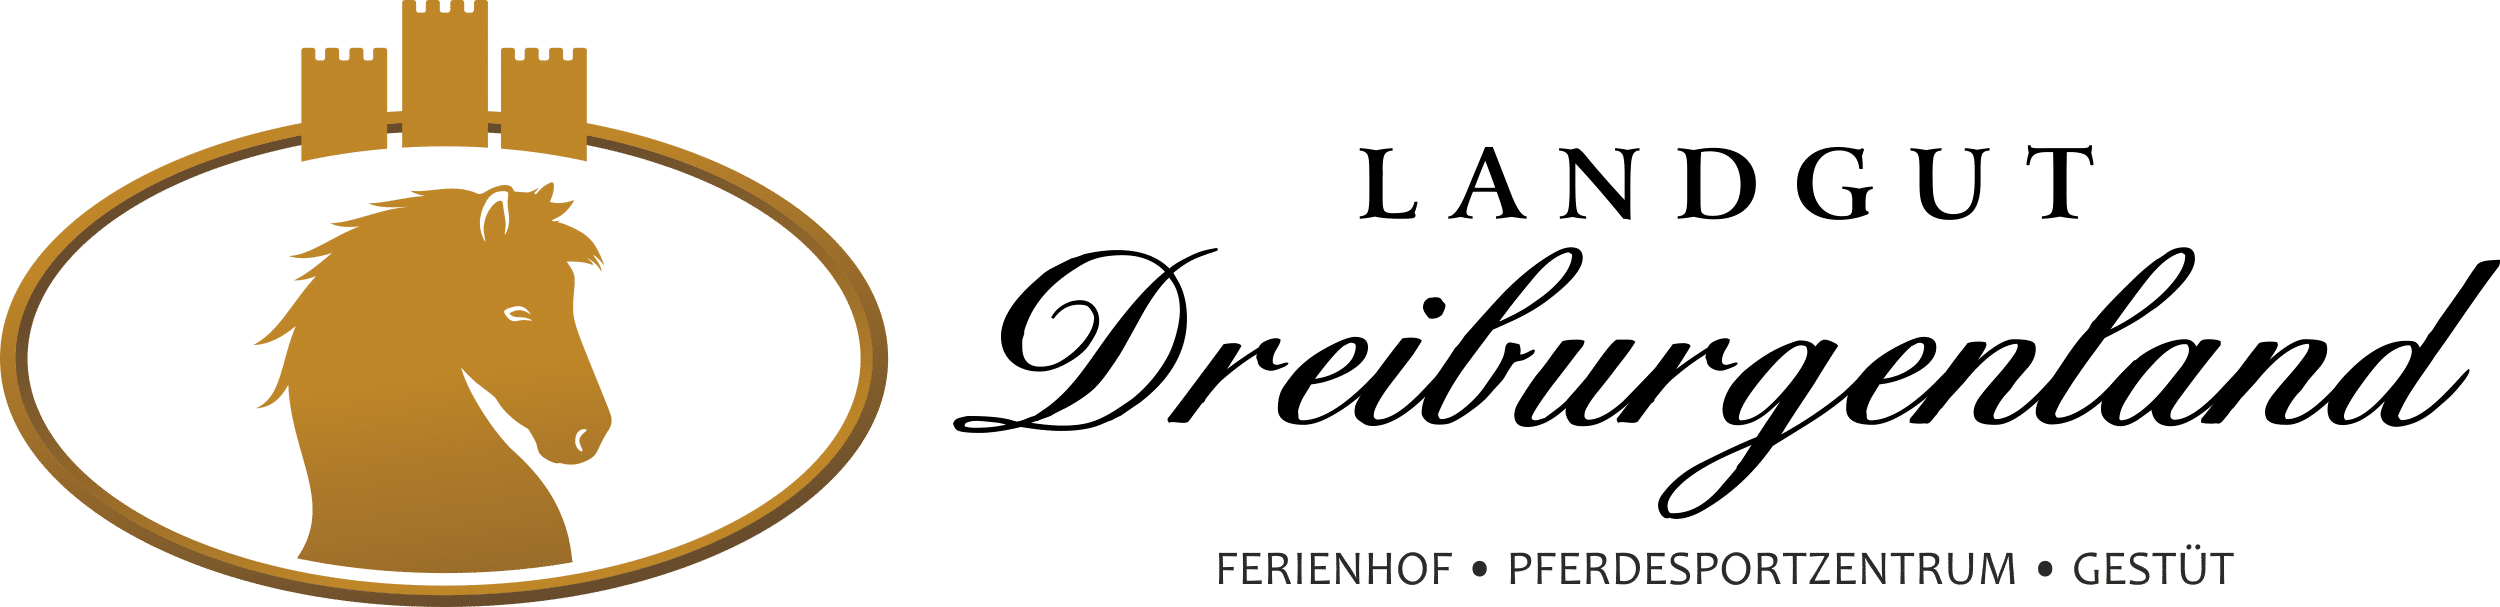 Landgut Dreiburgenland | Beckie - Landgut-Dreiburgenland